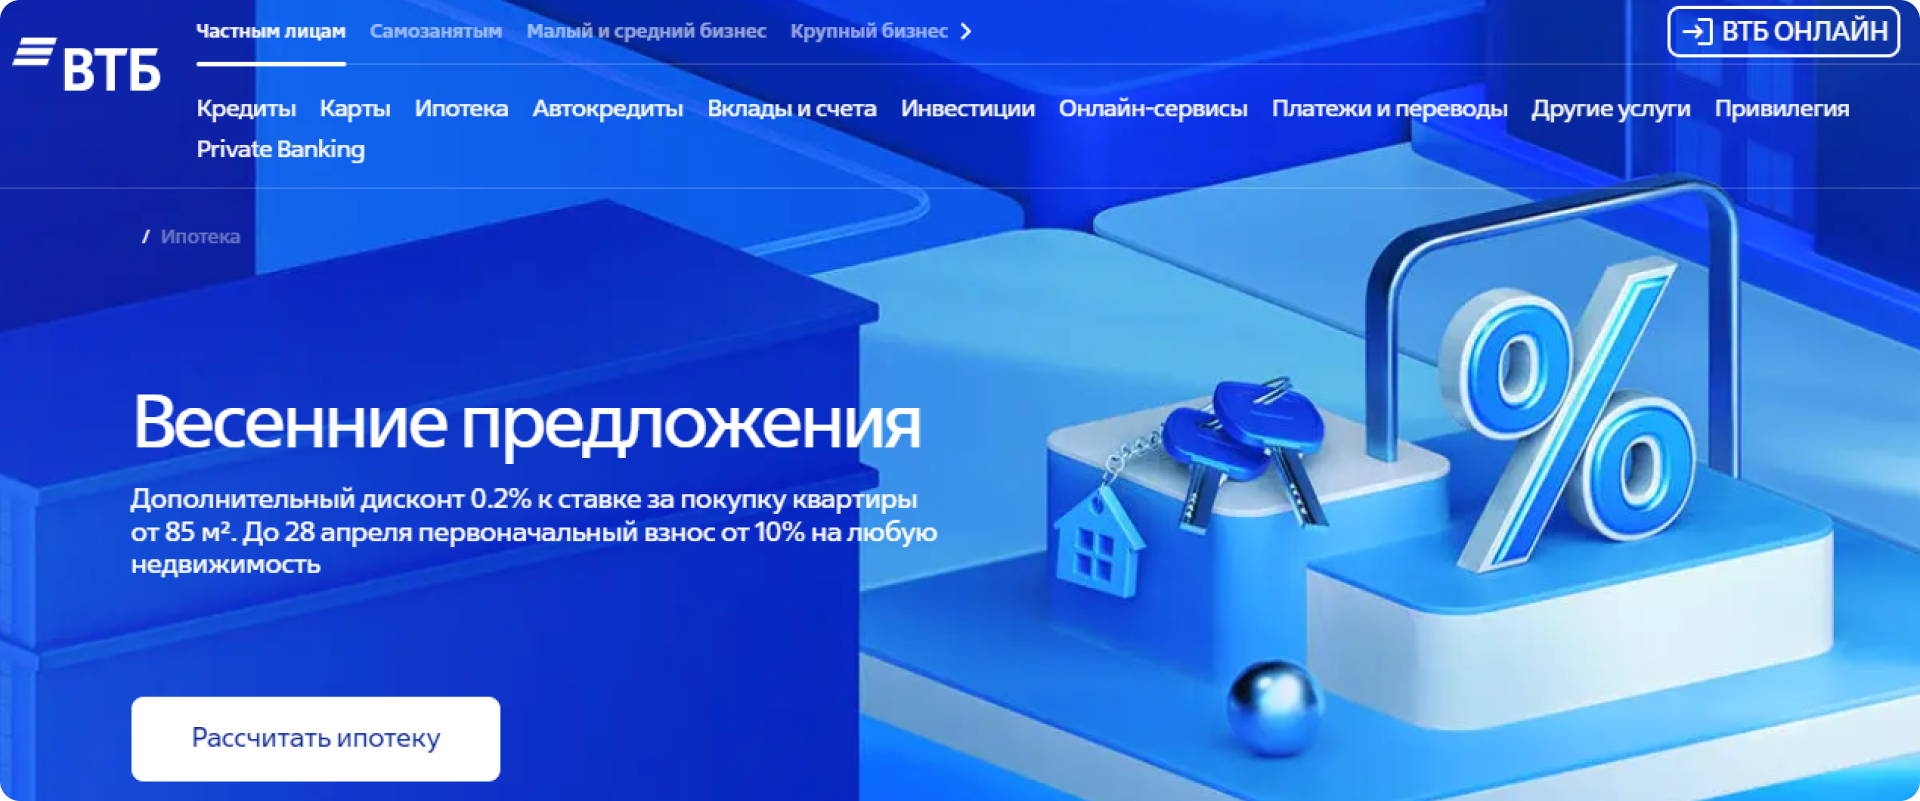 Главная страница банка «ВТБ»